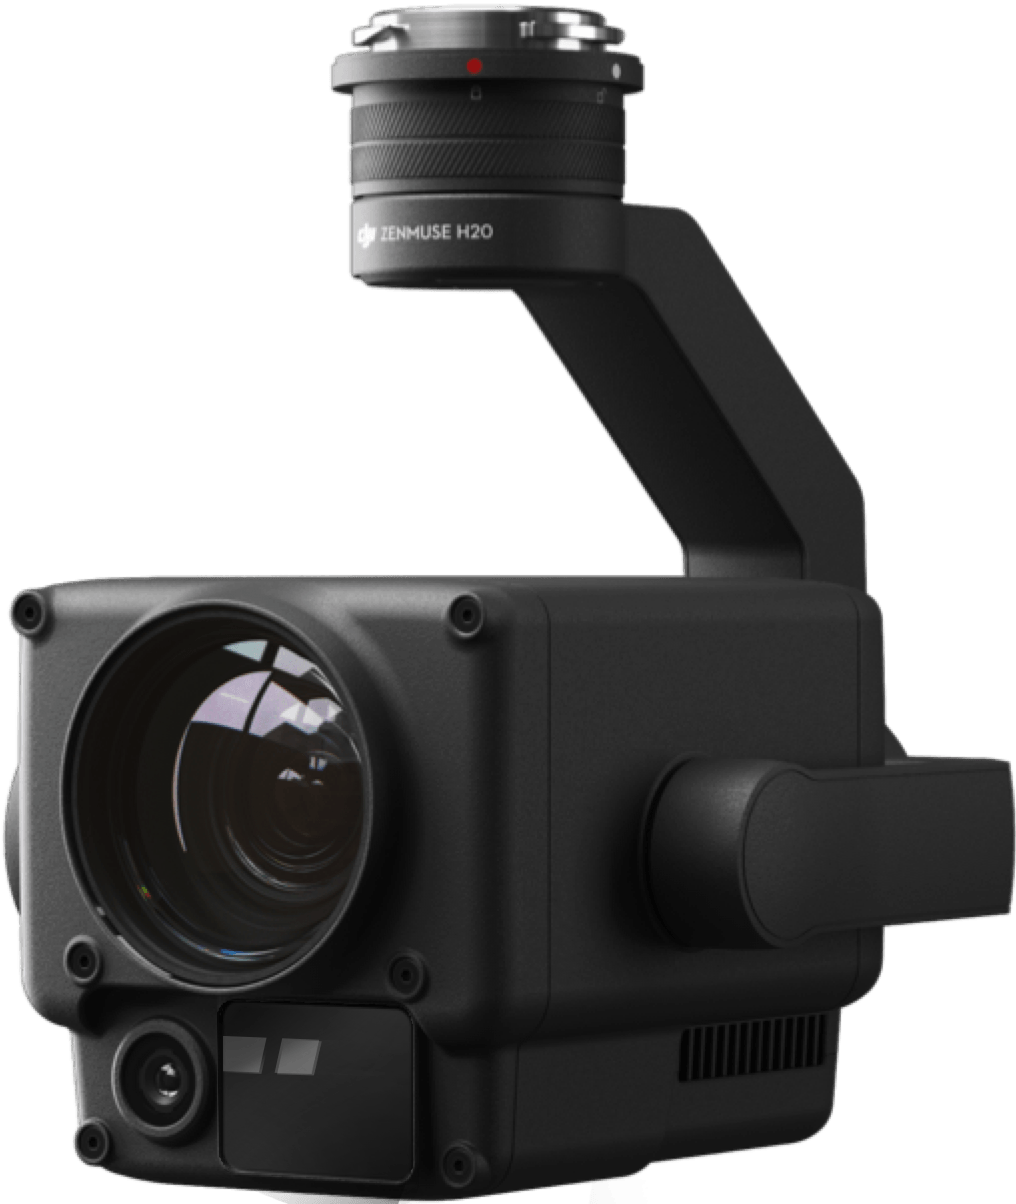 Zenmuse H20, Solución de sensor híbrido con LRF, cámara con zoom y gran angular